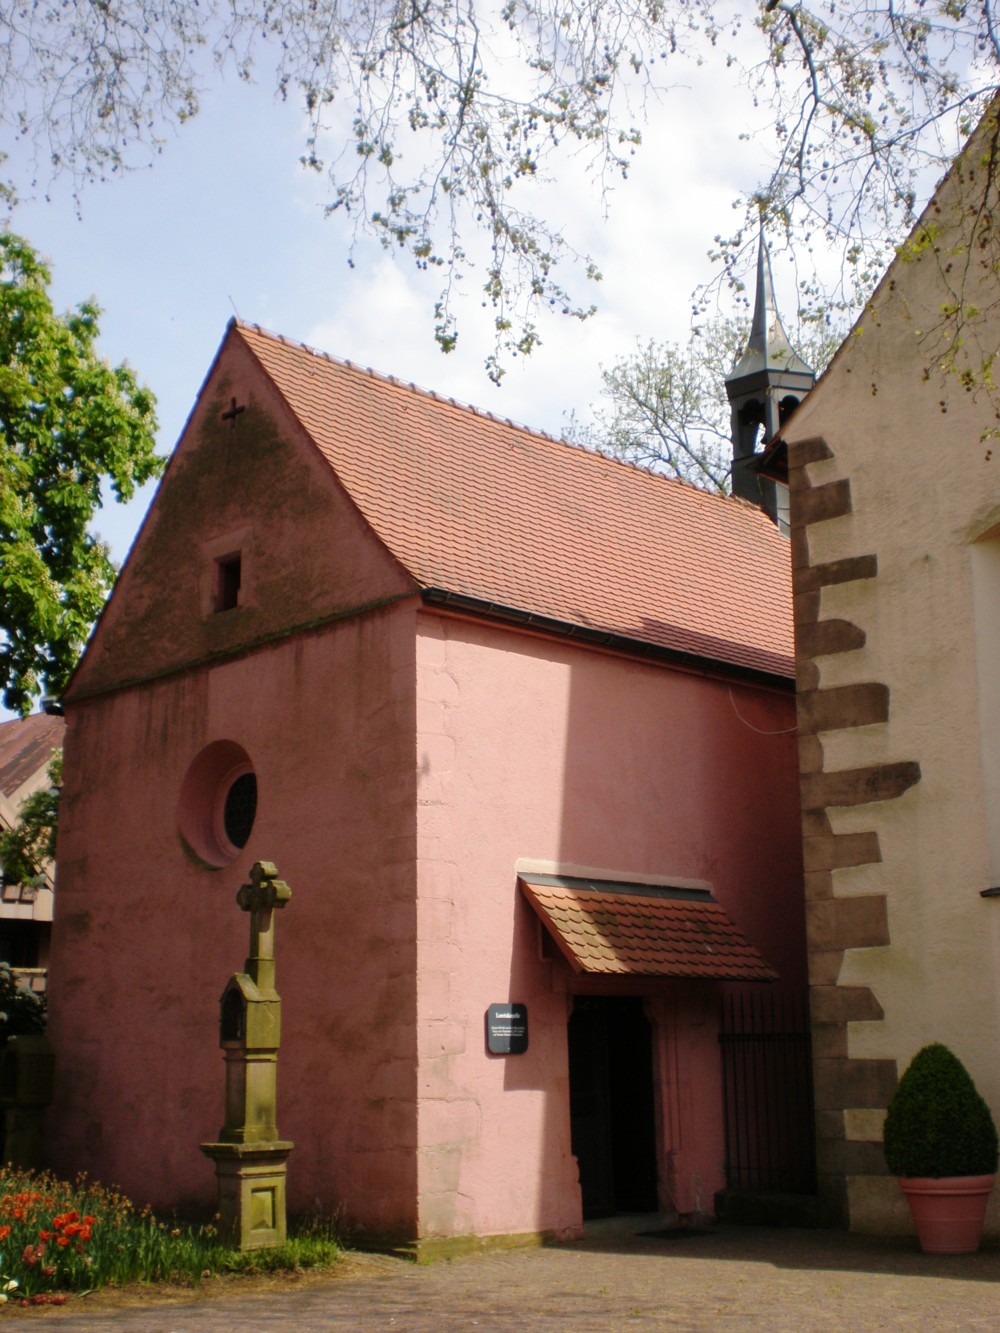 Loretokapelle von außen